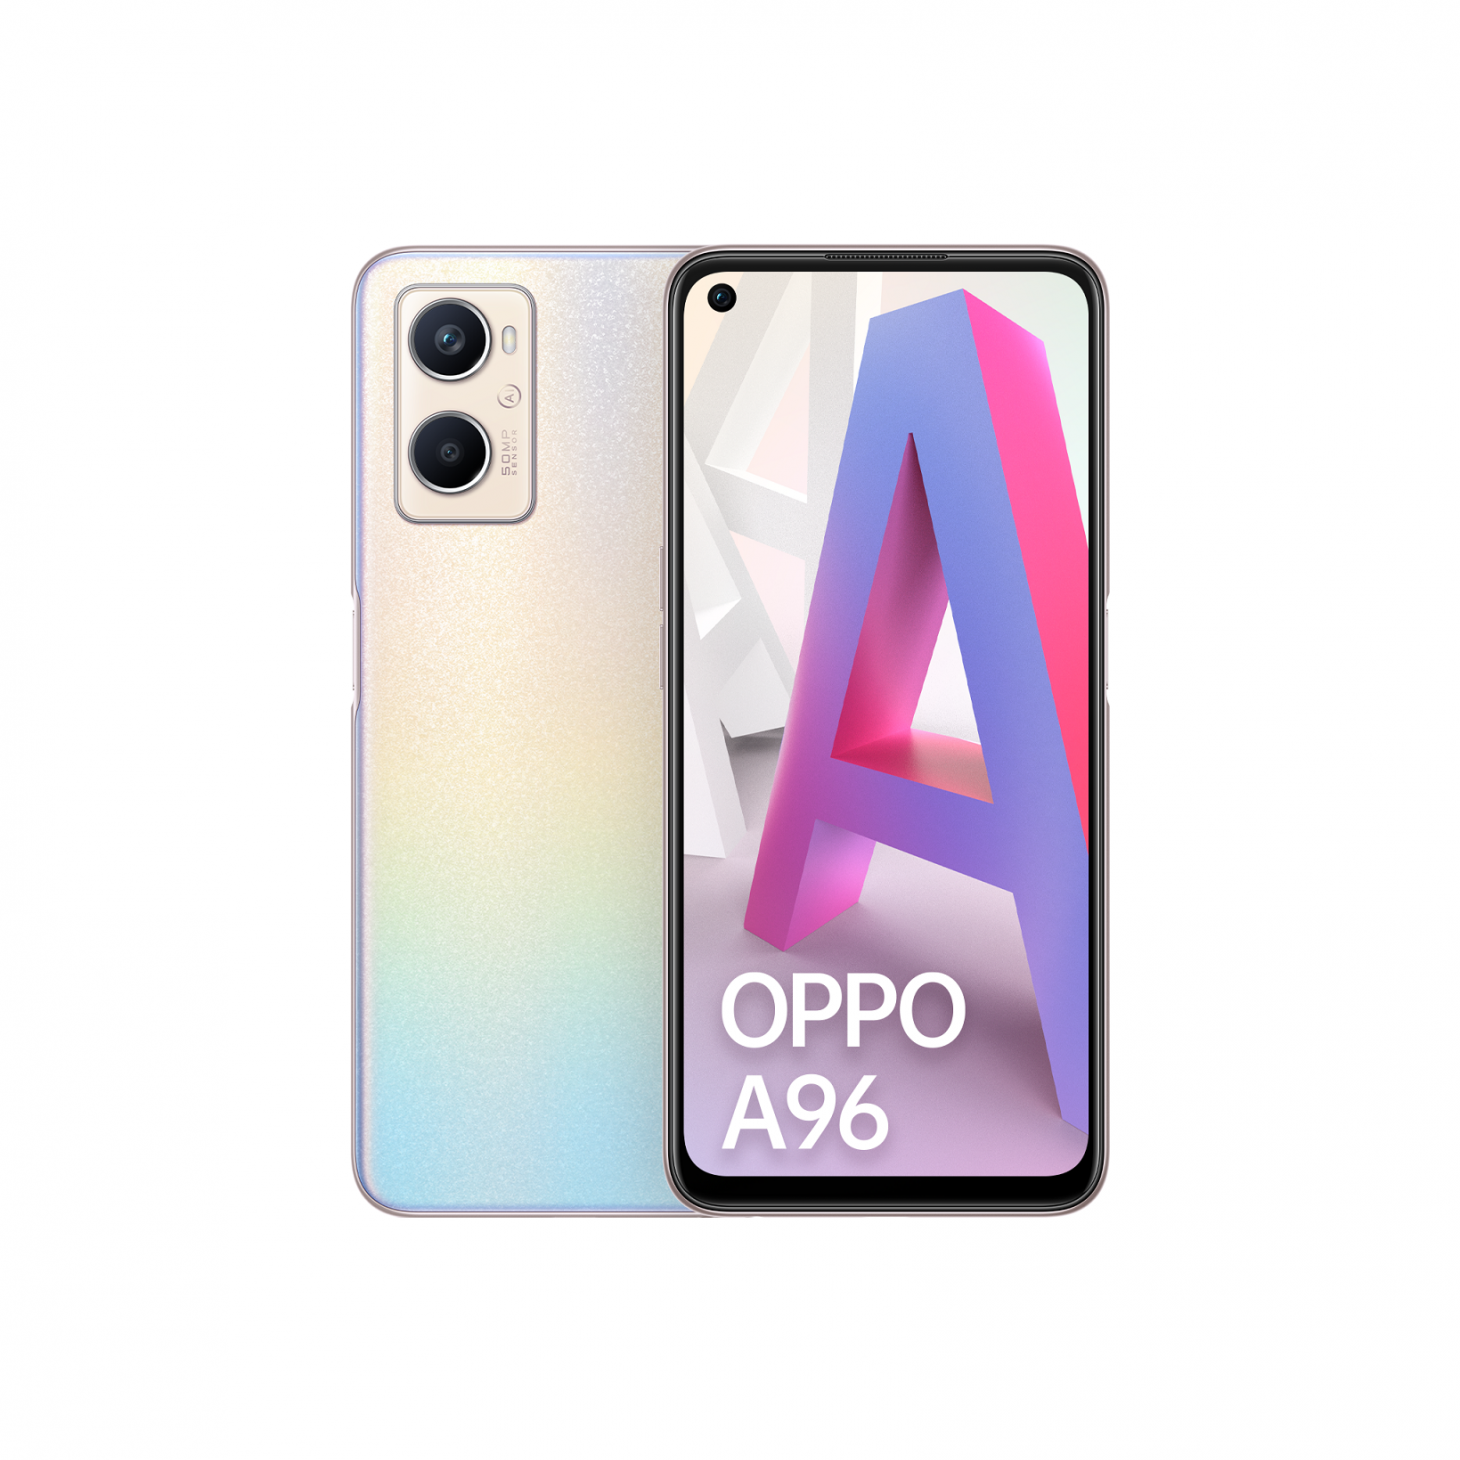 OPPO ra mắt A96 và A57, sạc nhanh nhất trong phân khúc - Combo A96 Pink RGB